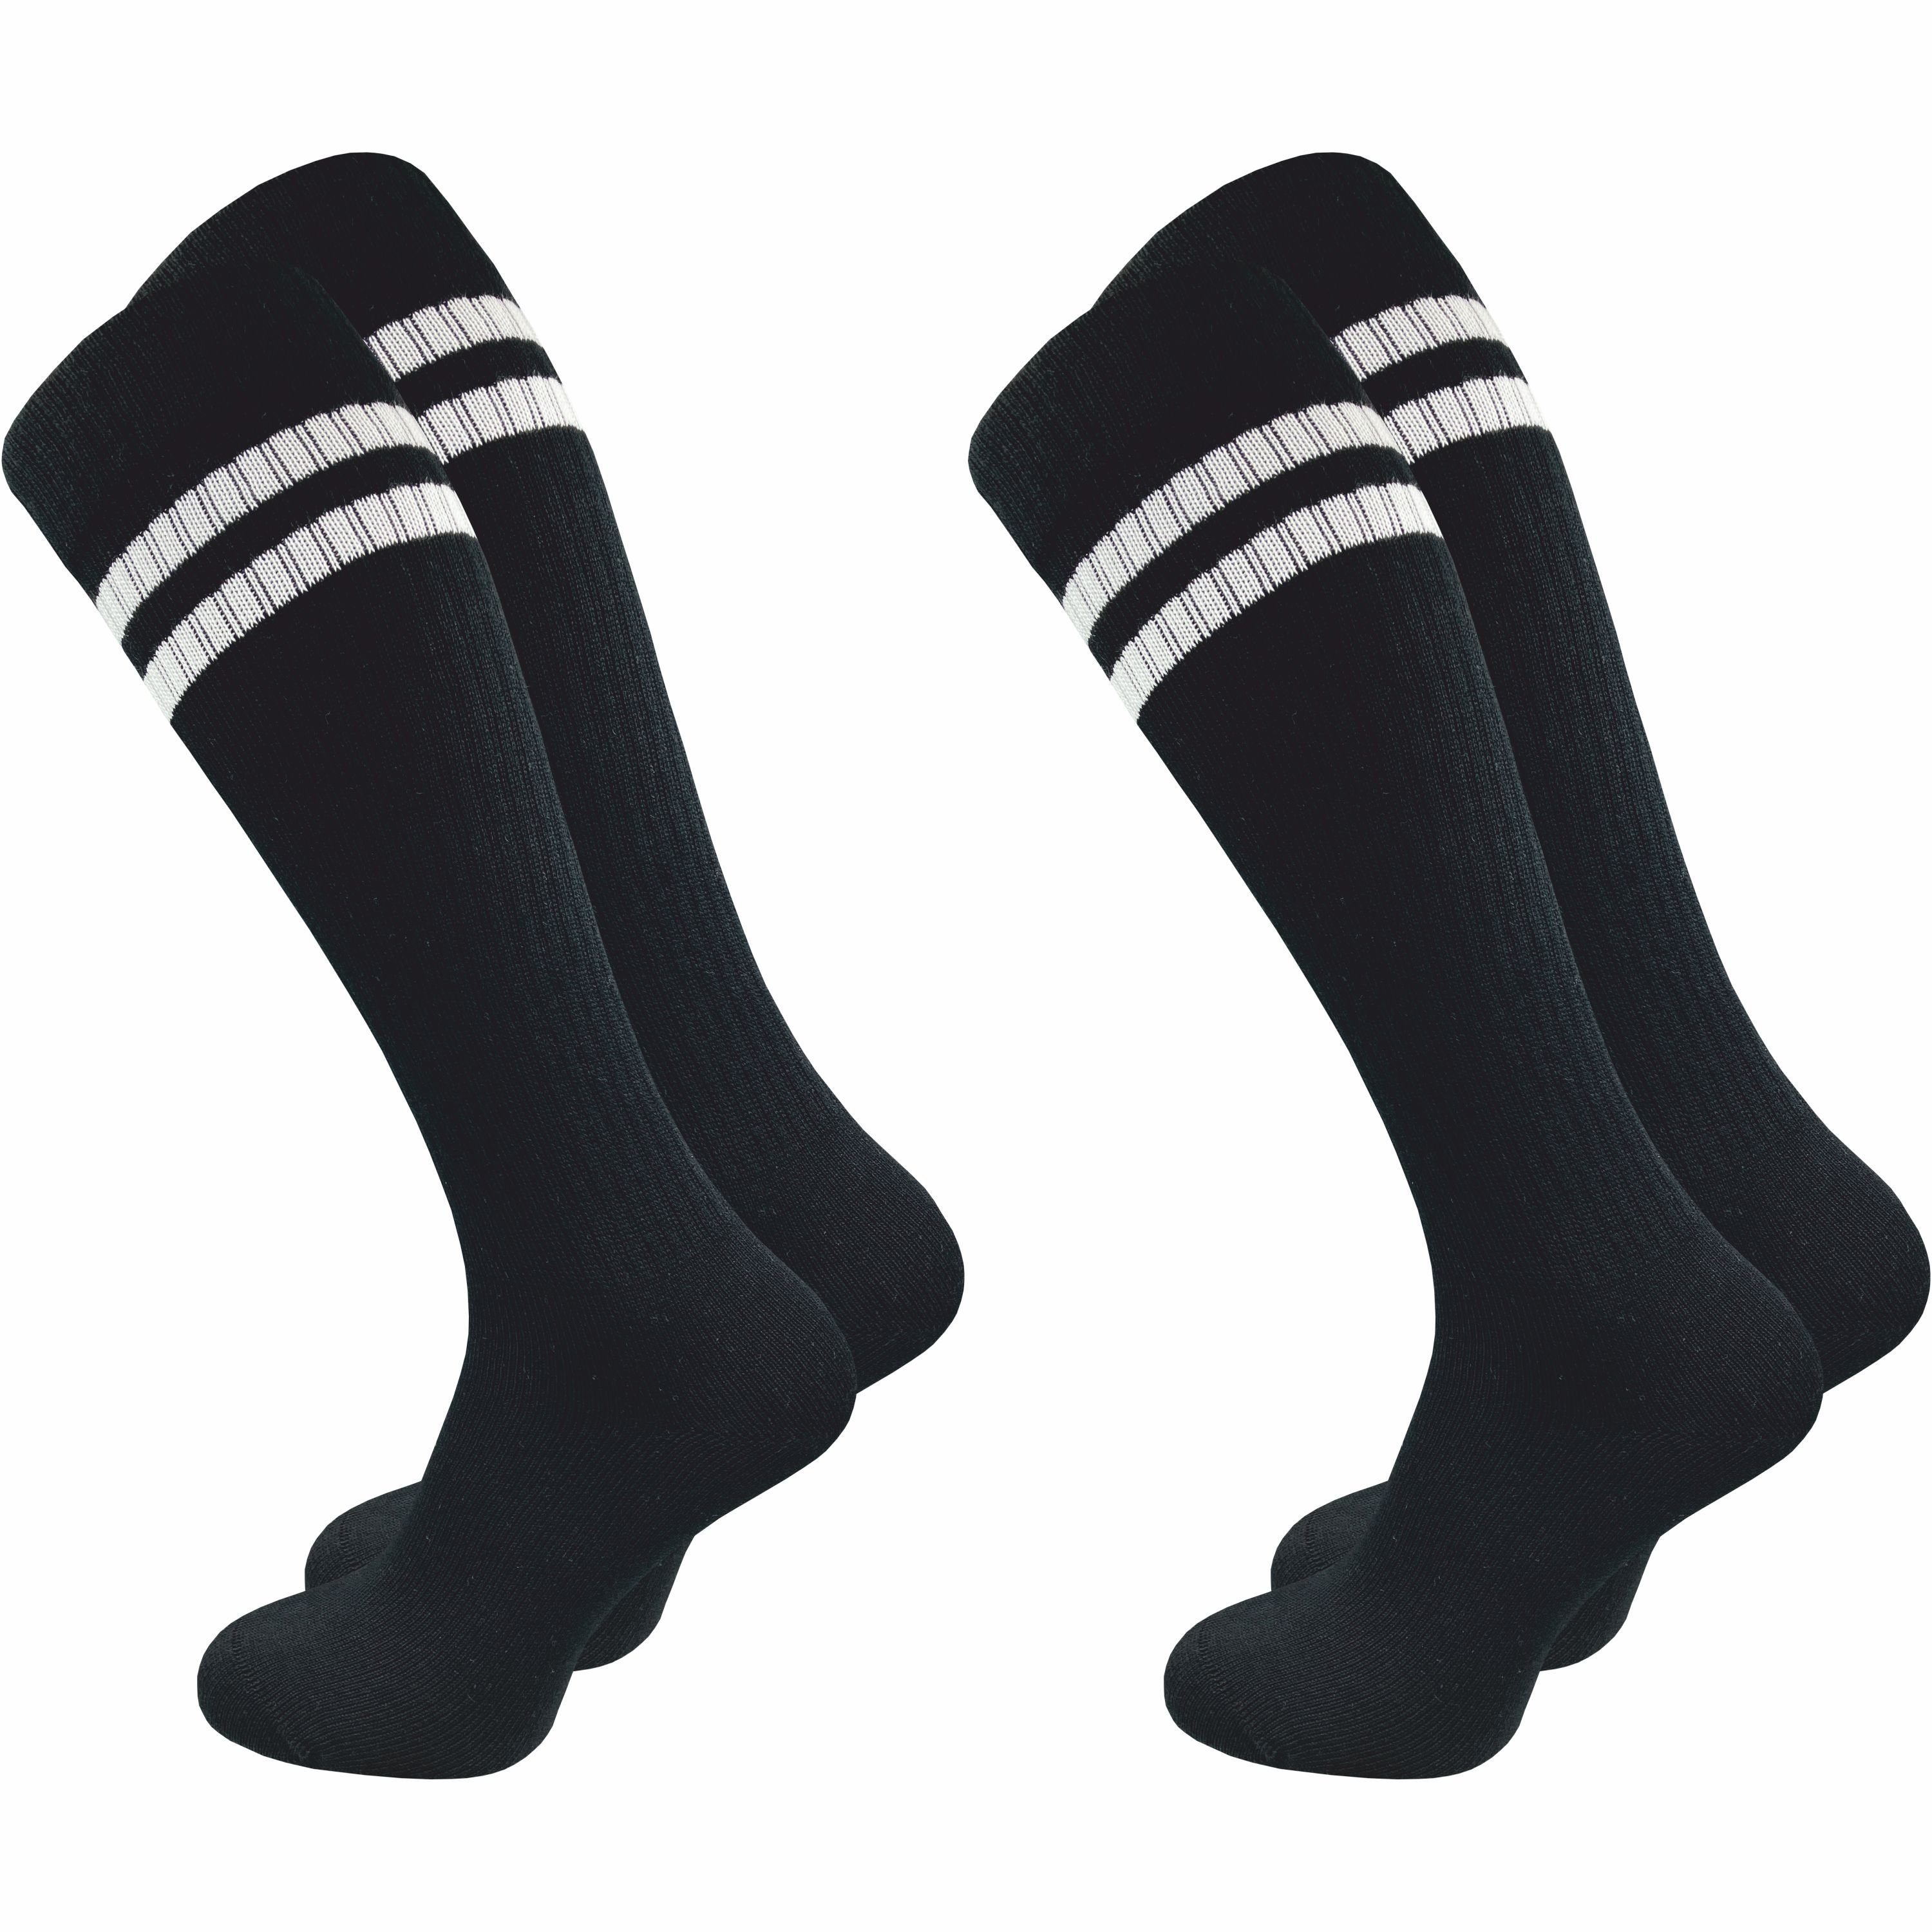 GAWILO Kniestrümpfe Retro für Herren mit stylischen Streifen - weiß & schwarz - Baumwolle (2 Paar) Knielange Socken im sportlichen Look - auch zum Wandern geeignet Schwarz mit Streifen